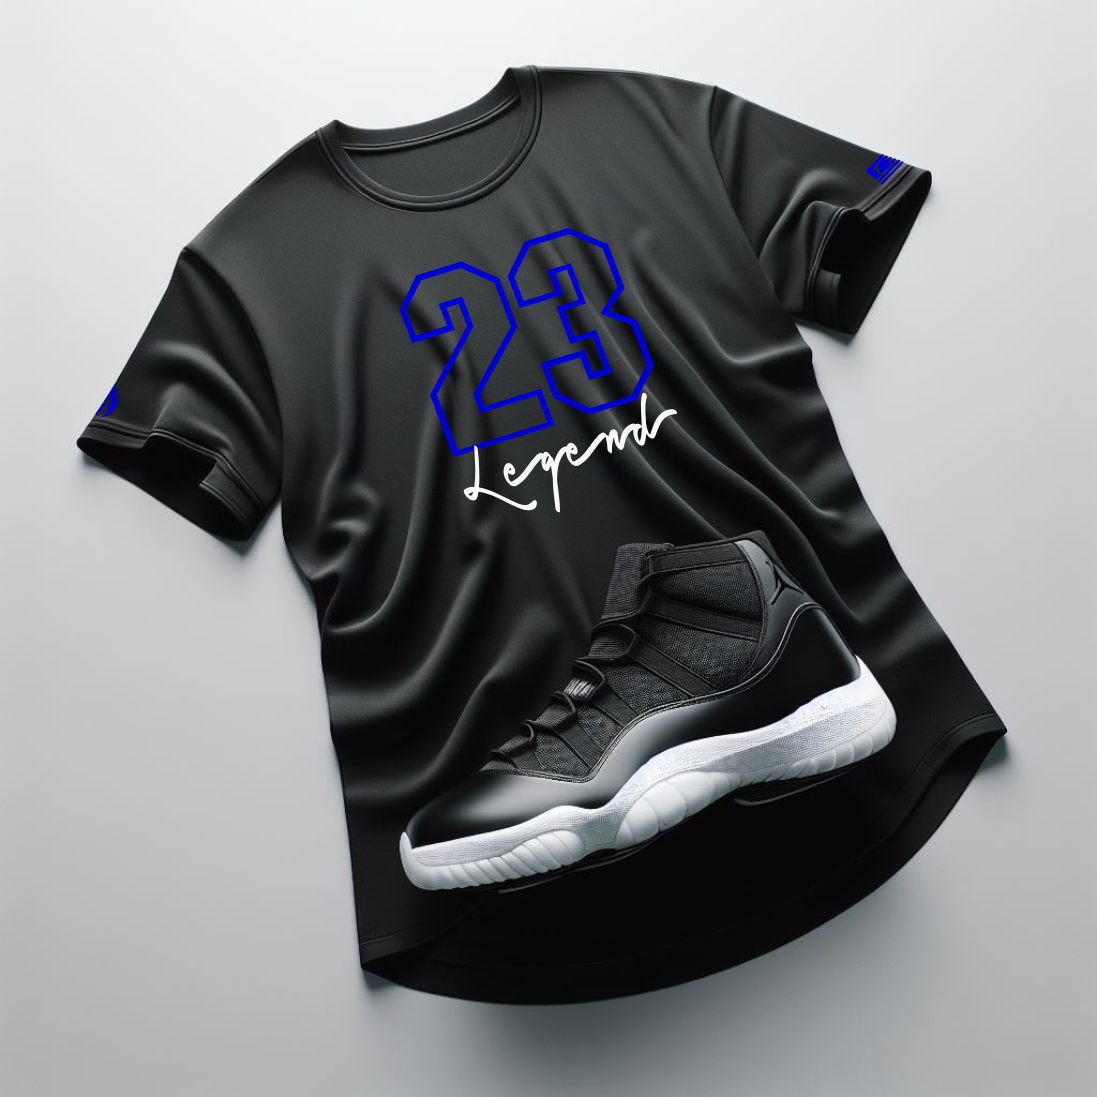 23 Legend Black Sneaker T-Shirt To Match Air Jordan Retro 13 Hyper Royal Men's Tee Fire!🔥